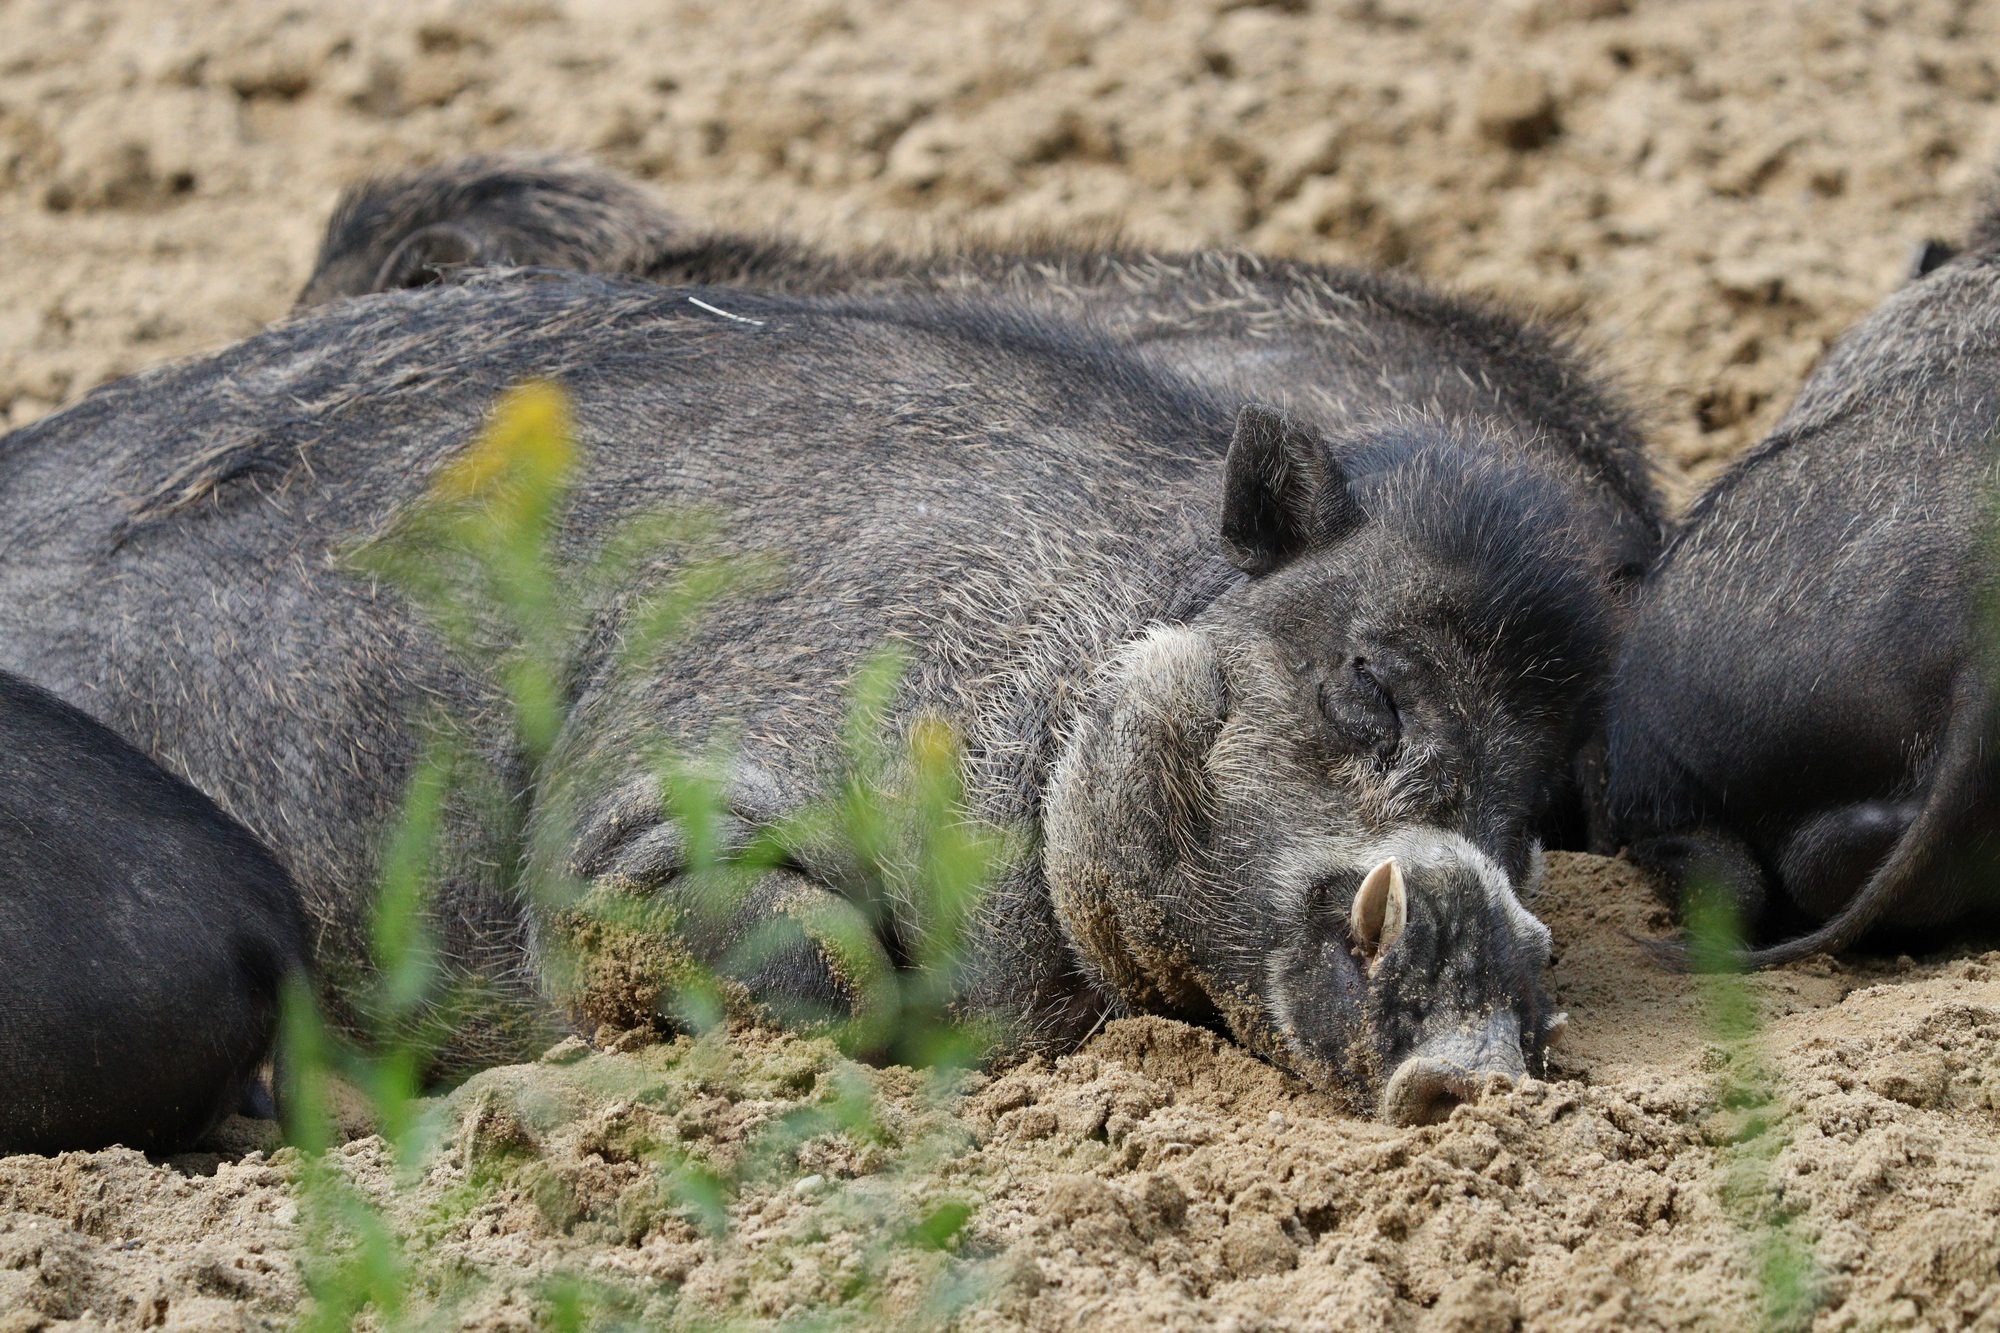 Visayas-Pustelschweine im Tierpark Hellabrunn